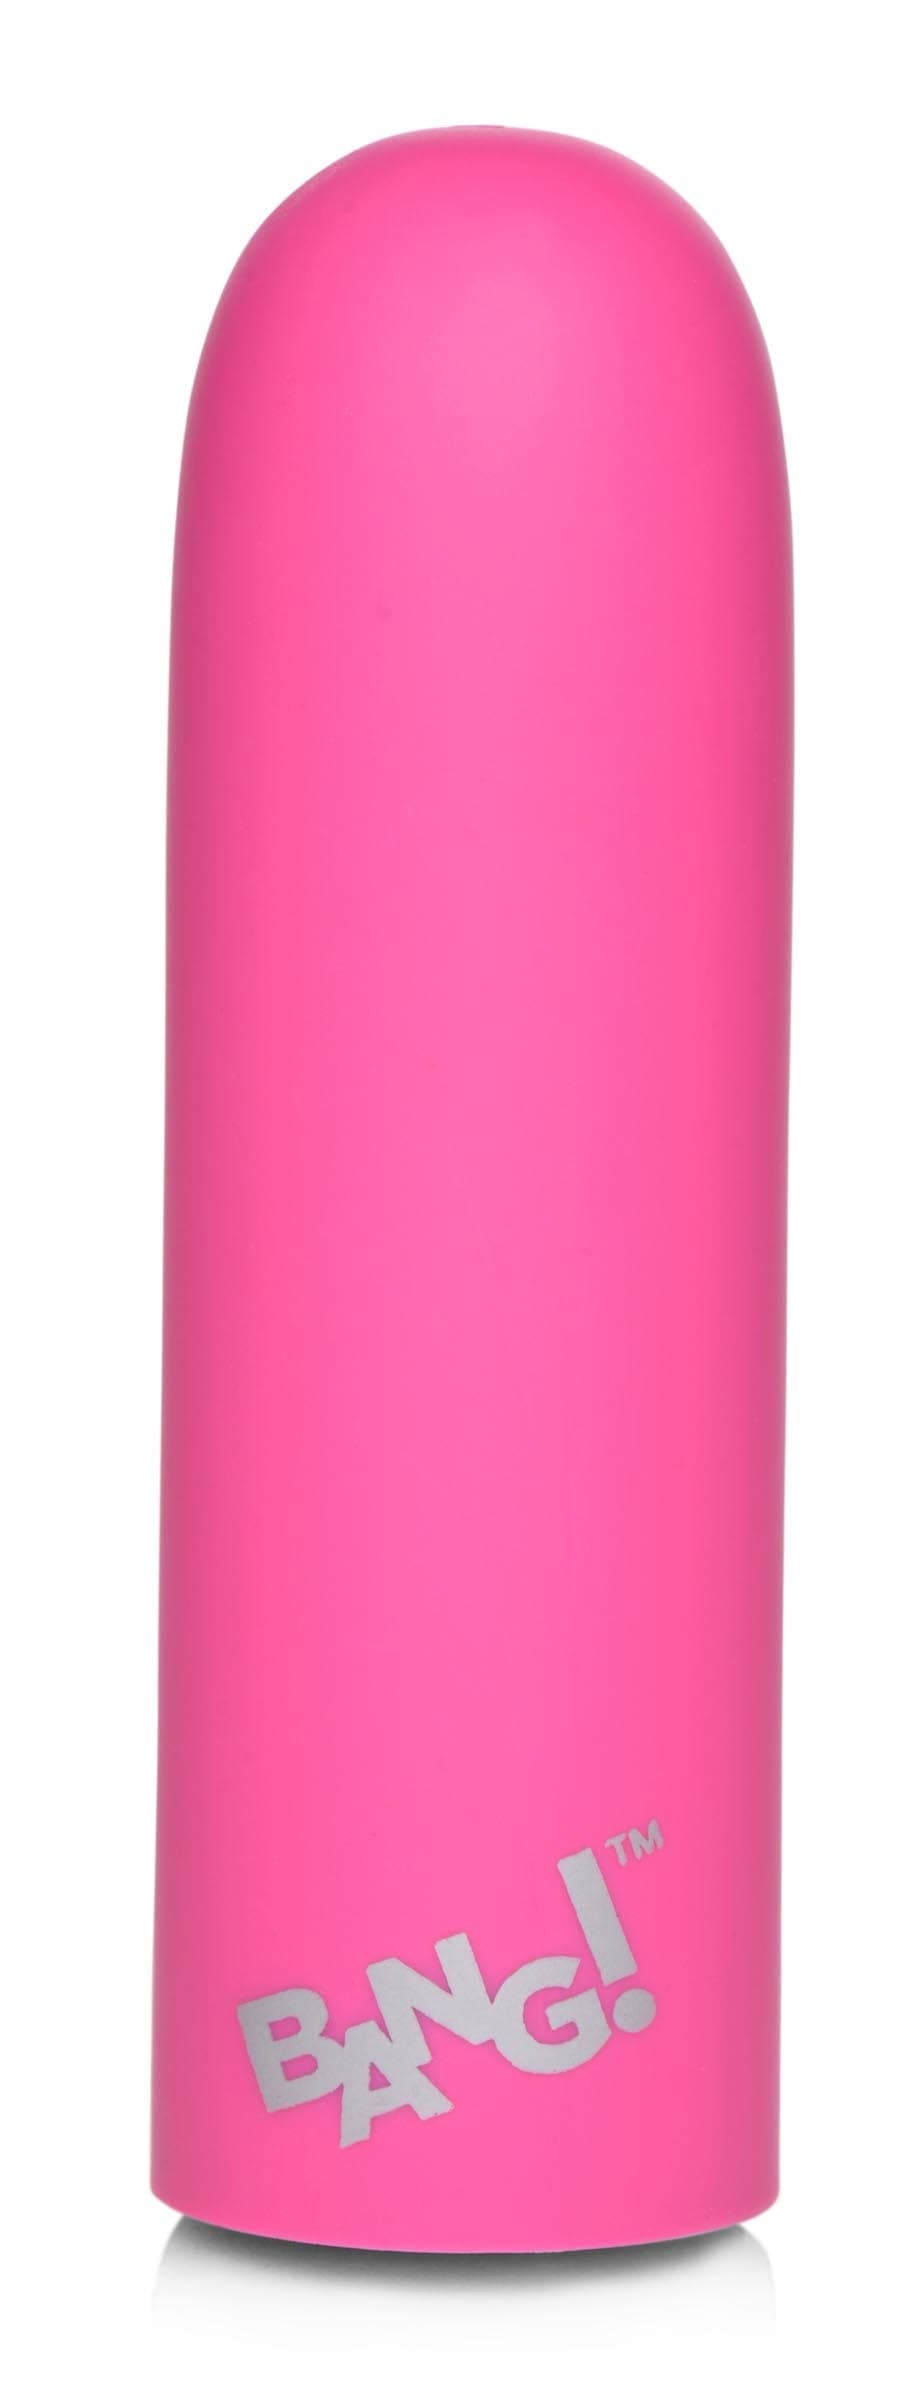 10x mega vibrator pink